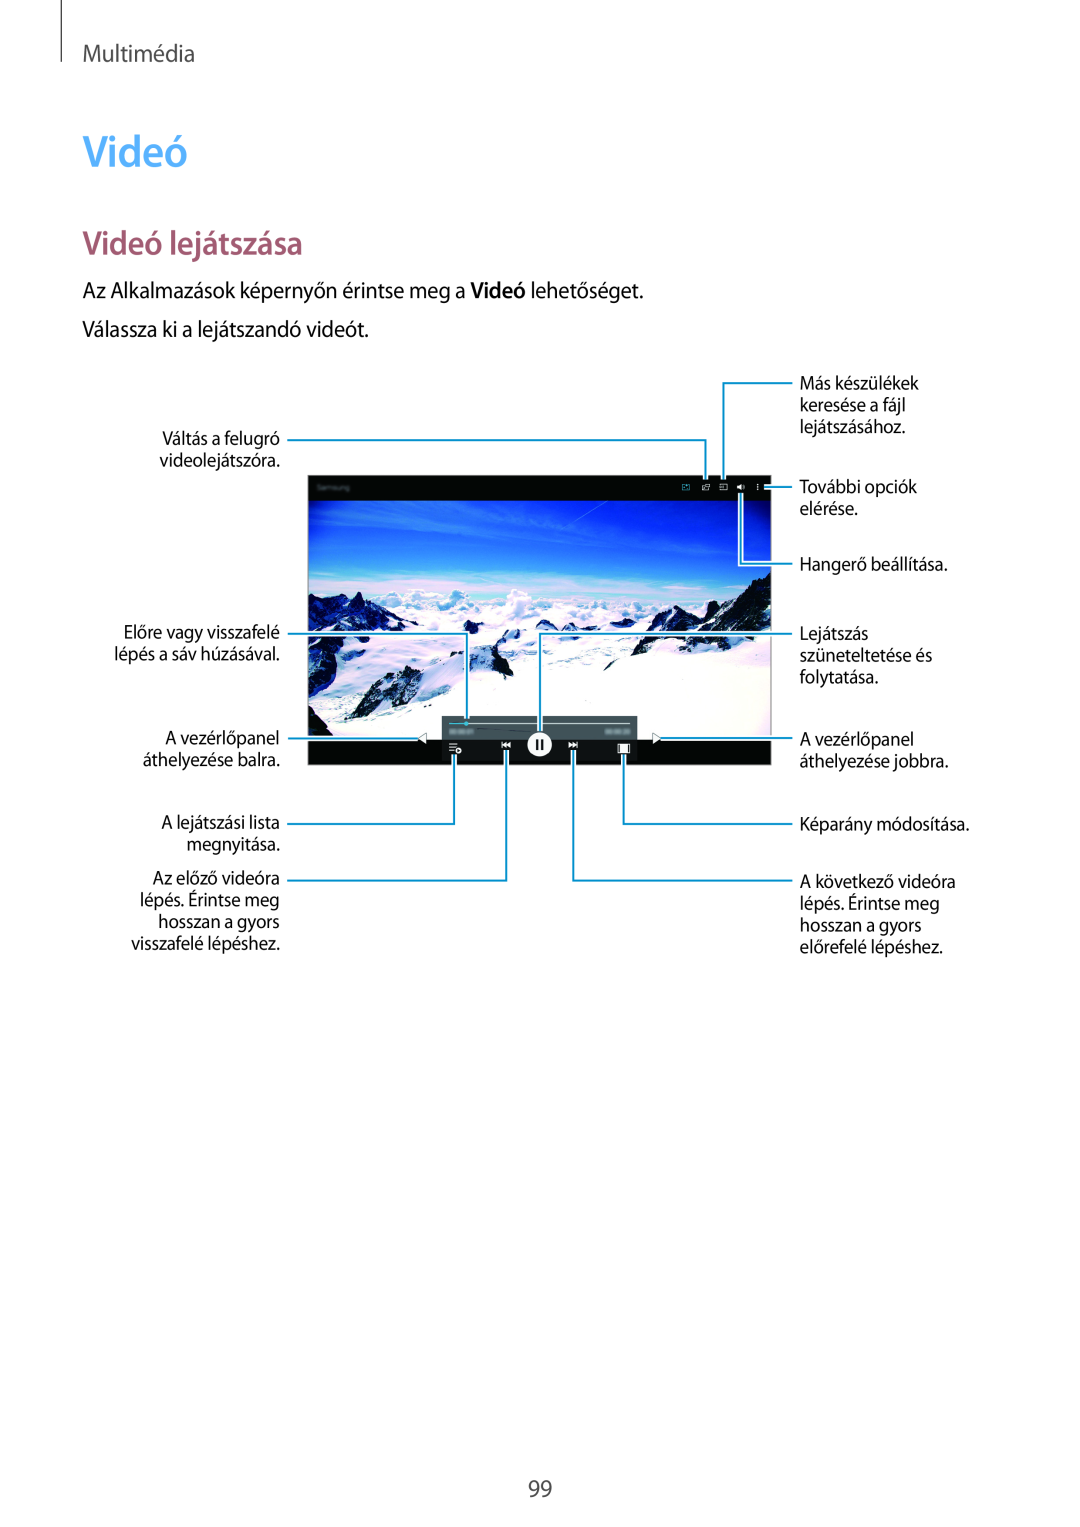 Samsung SM-T705NZWAPAN manual Videó lejátszása, Multimédia, Hangerő beállítása Lejátszás szüneteltetése és folytatása 